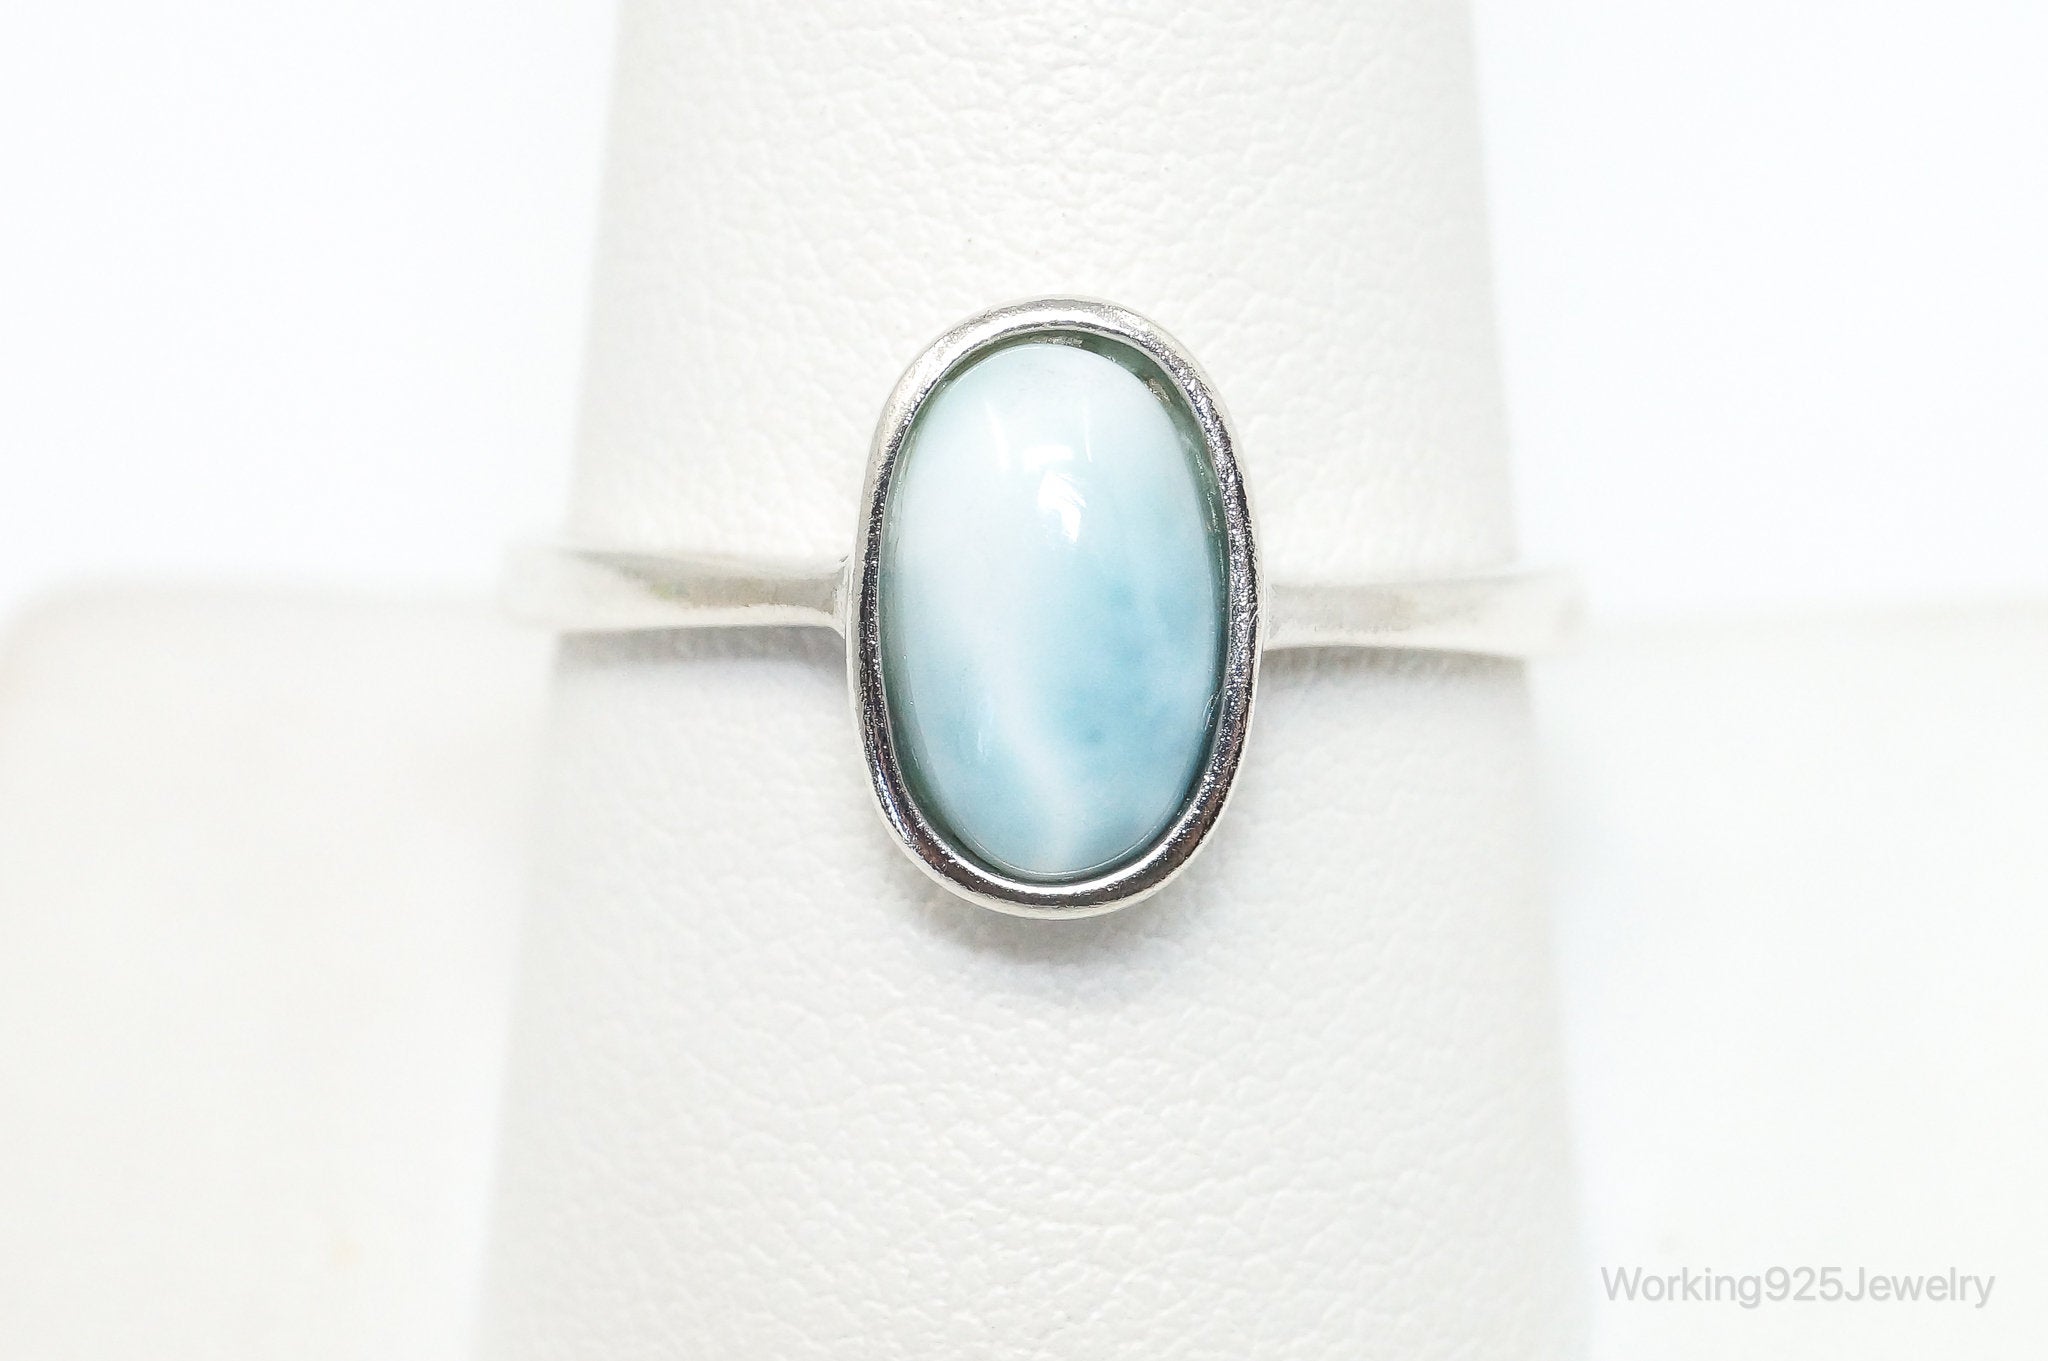 Vintage Blue Larimar Sterling Silver Ring - Size 9.75